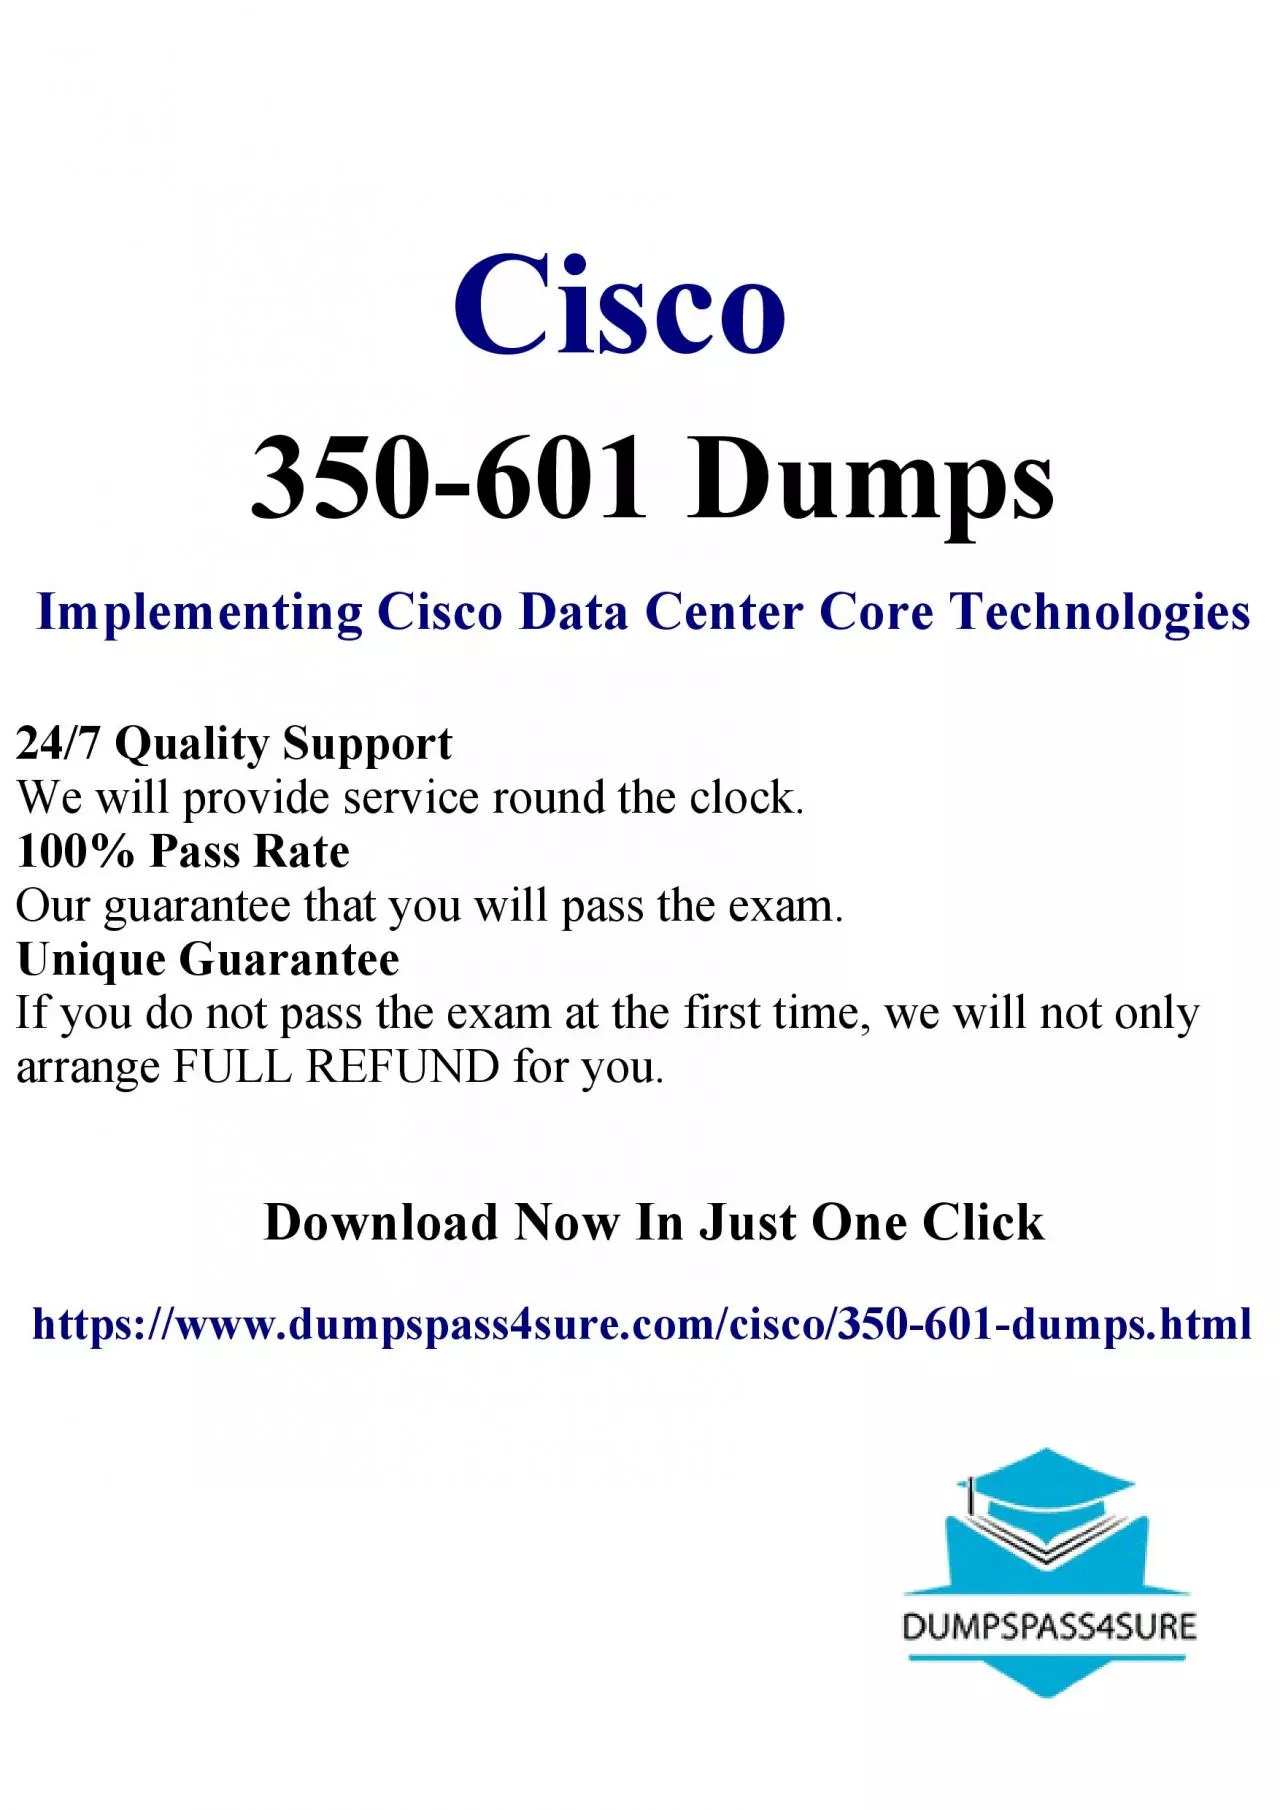 Festive feat: 20% off Cisco 350-601 Dumps PDF at DumpsPass4Sure – unlock success!